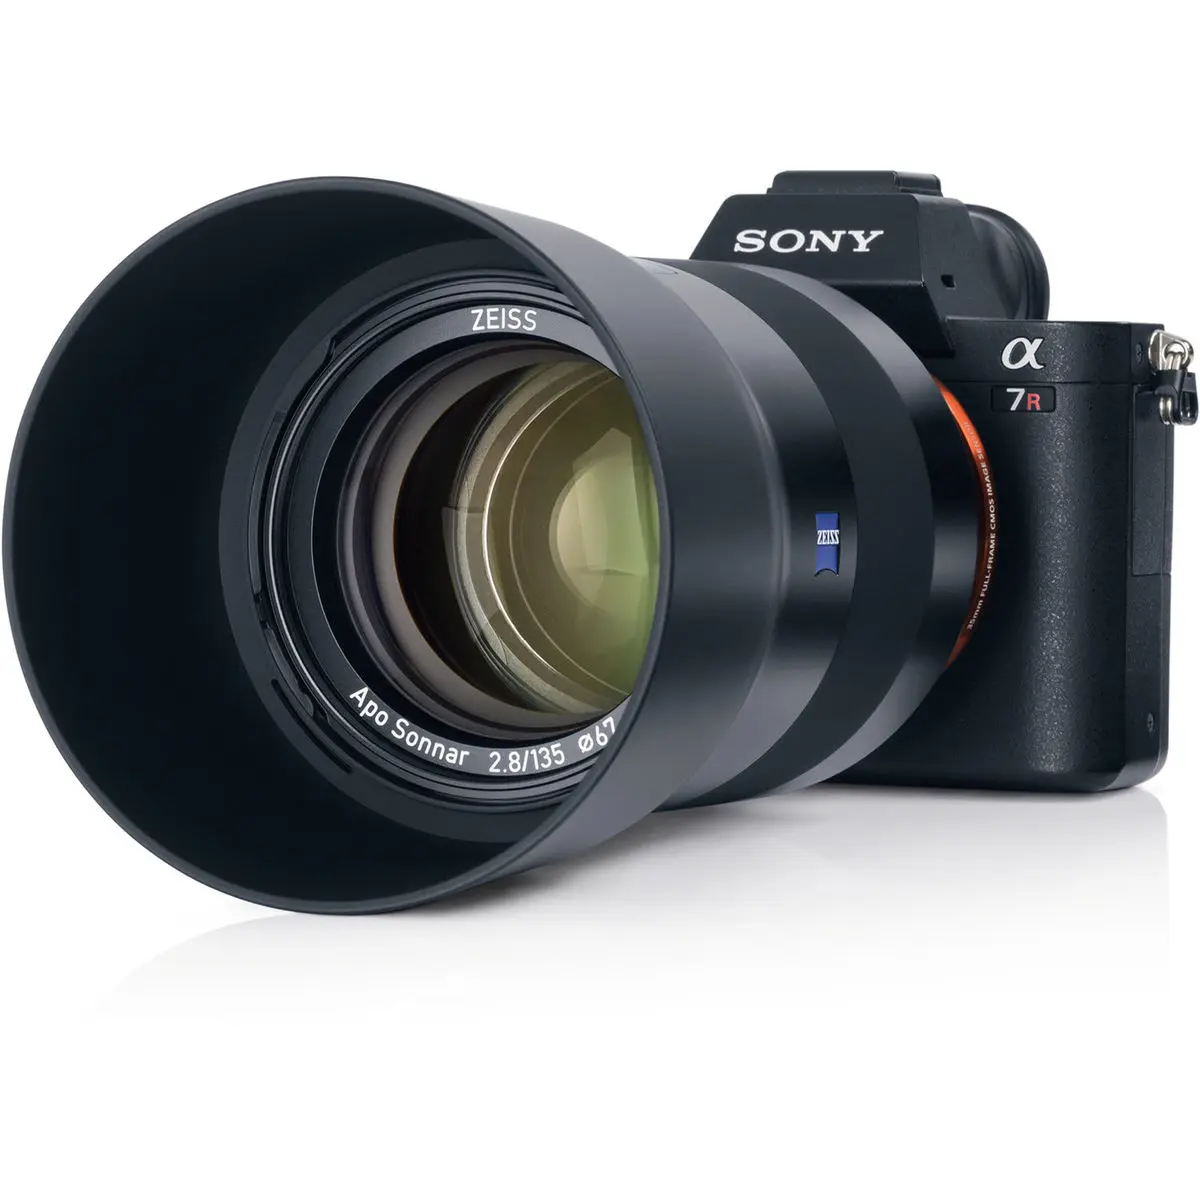 11. Carl Zeiss Batis 135mm F2.8 for Sony E mount Lens